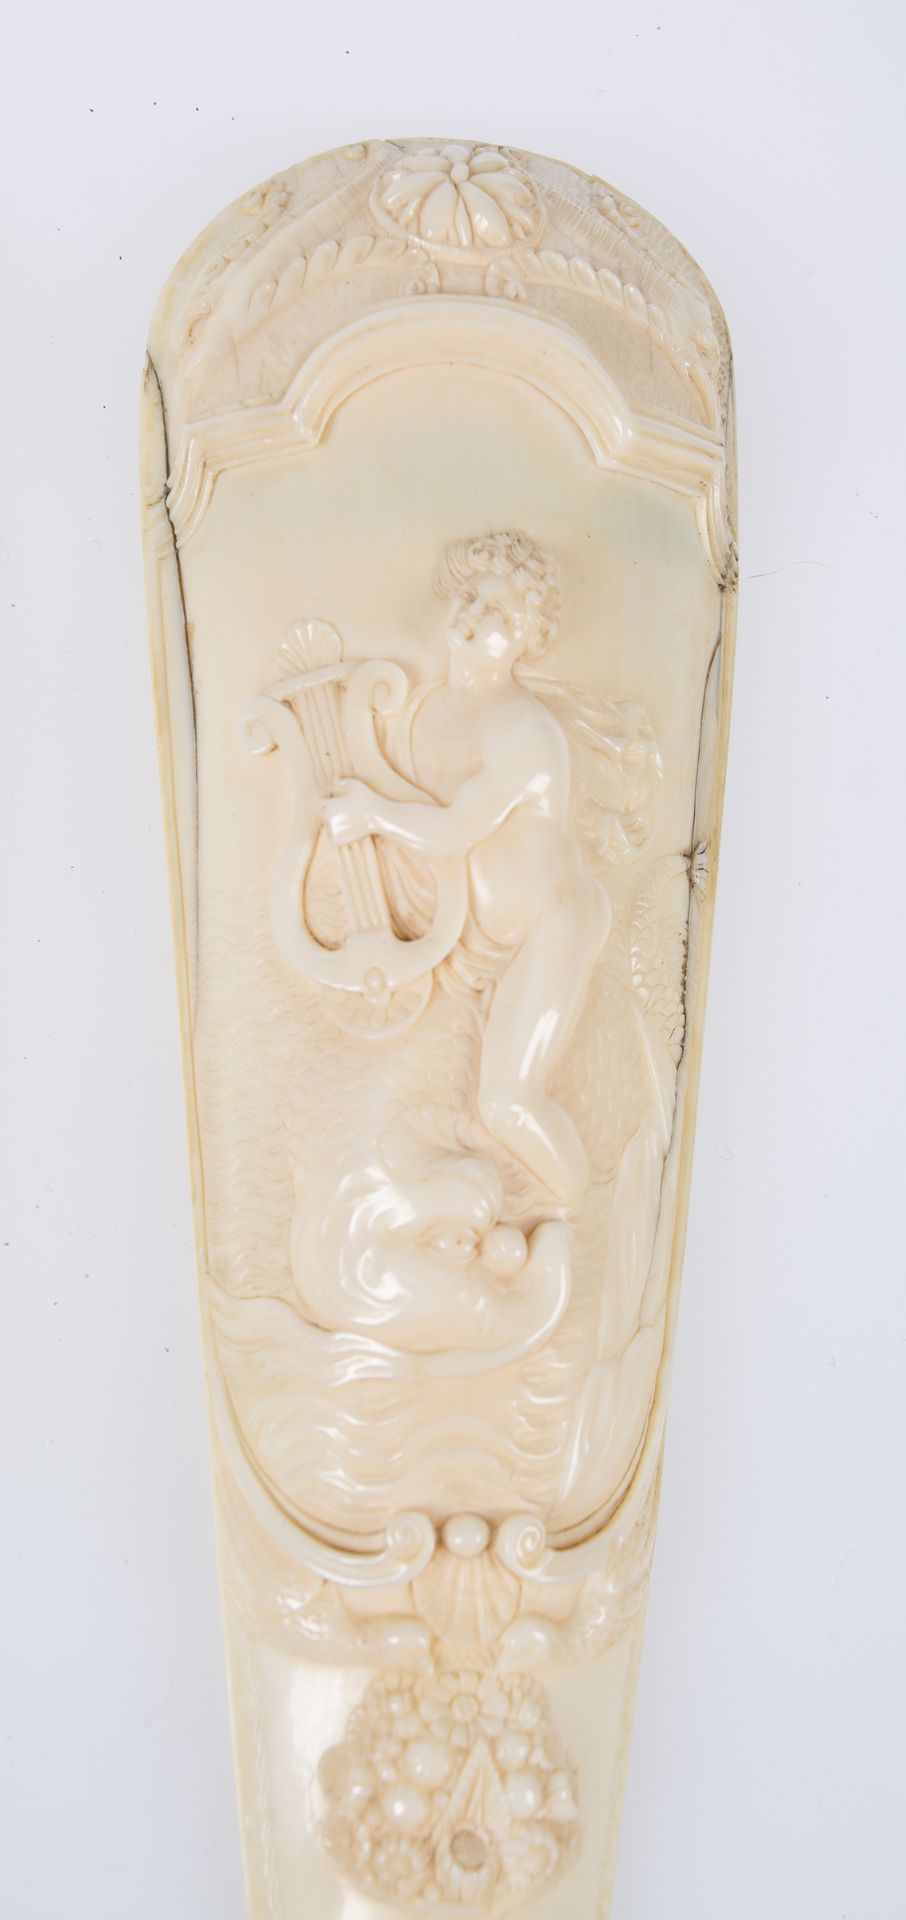 Sculpted ivory snuffbox. The Netherlands. Circa 1720. - Bild 2 aus 2